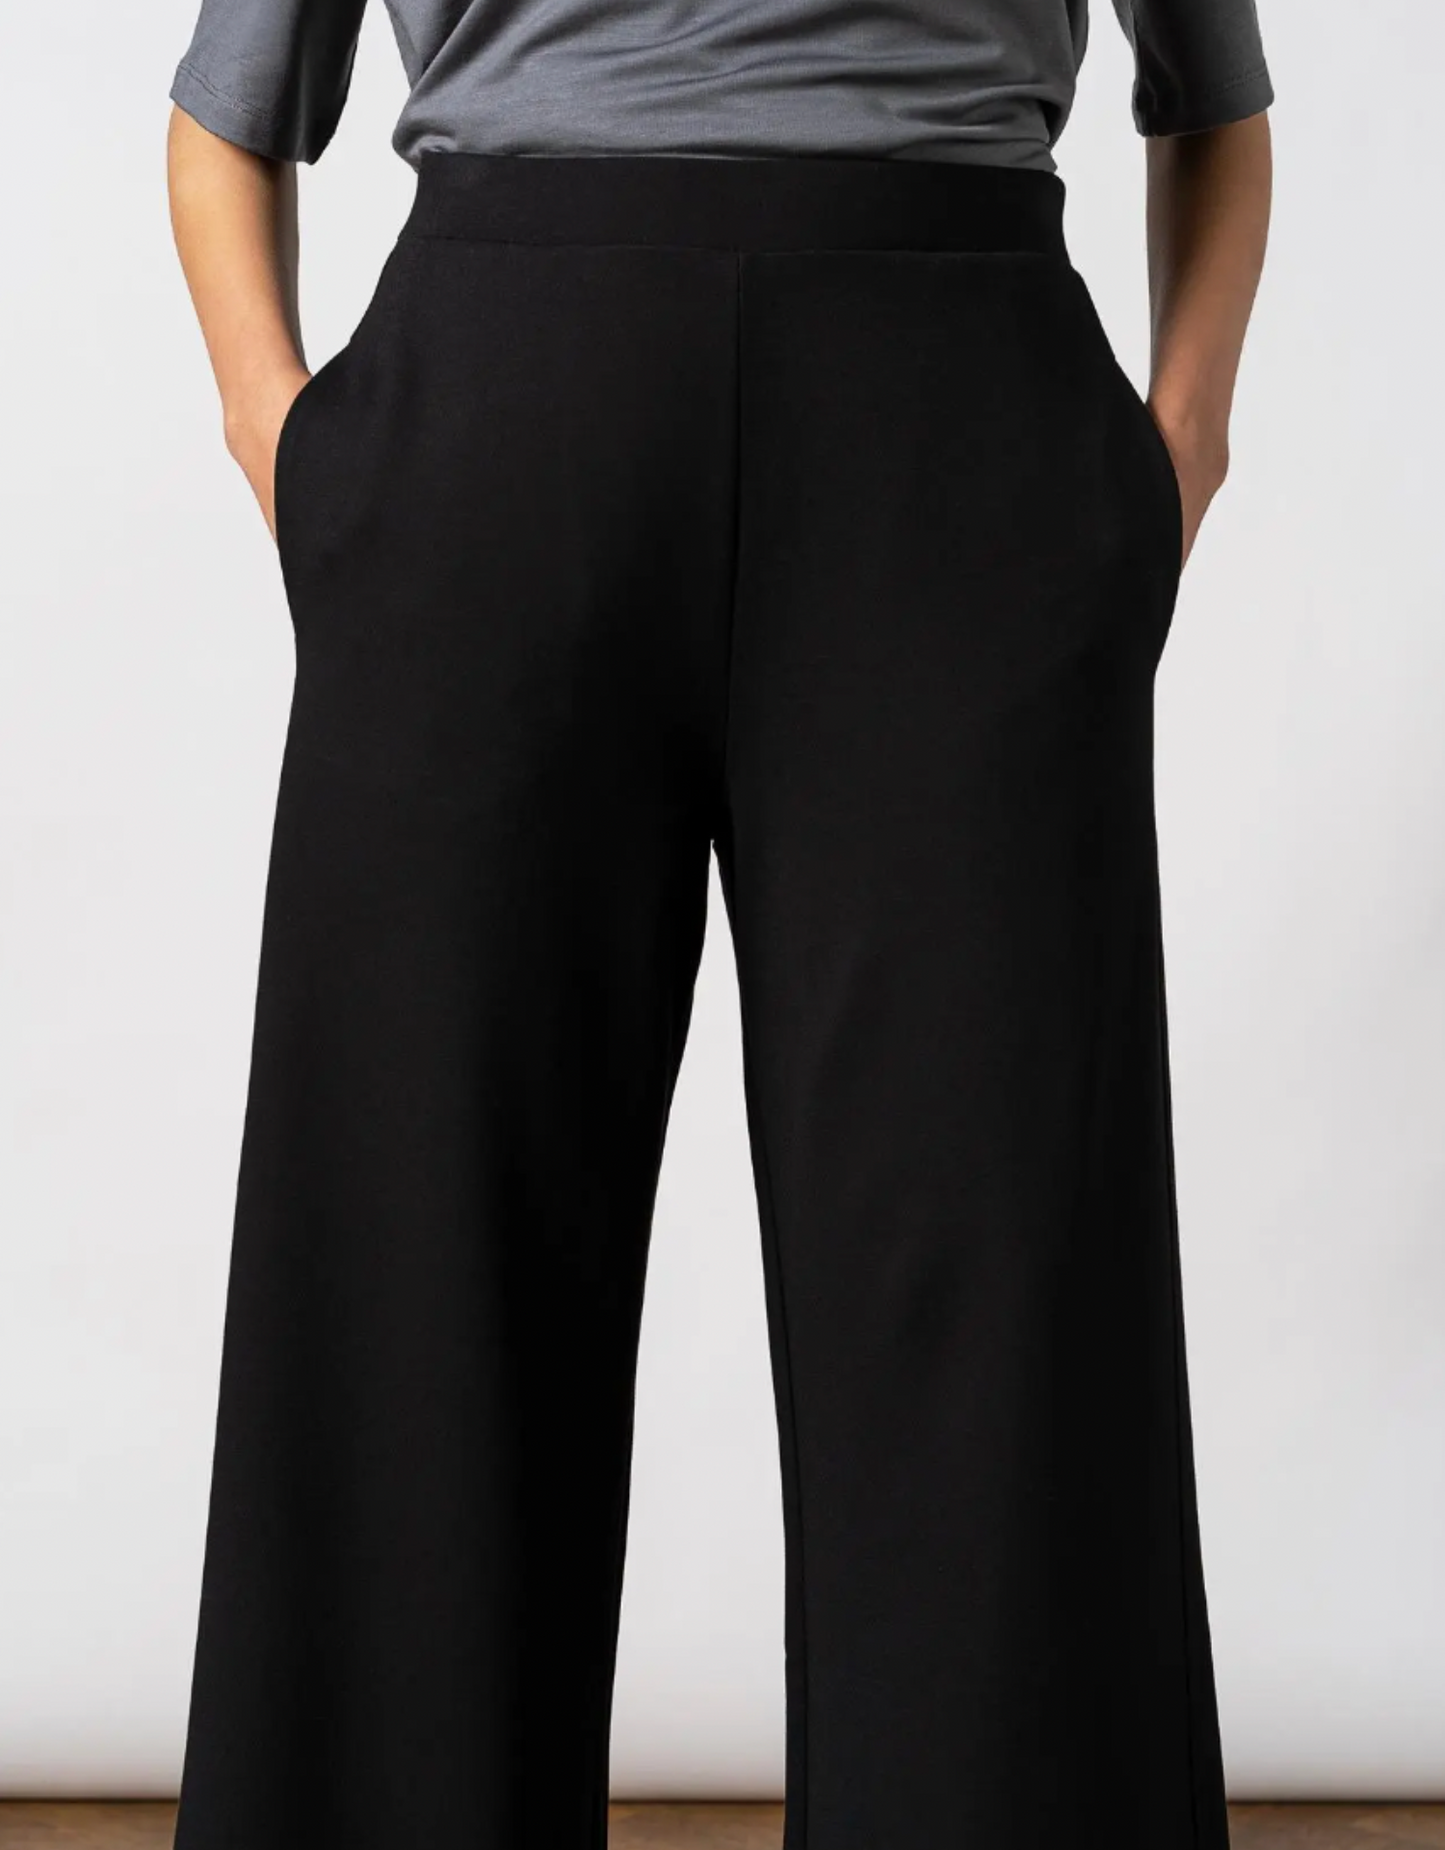 מכנסיים בגזרה רחבה - אורך רגיל - שחור